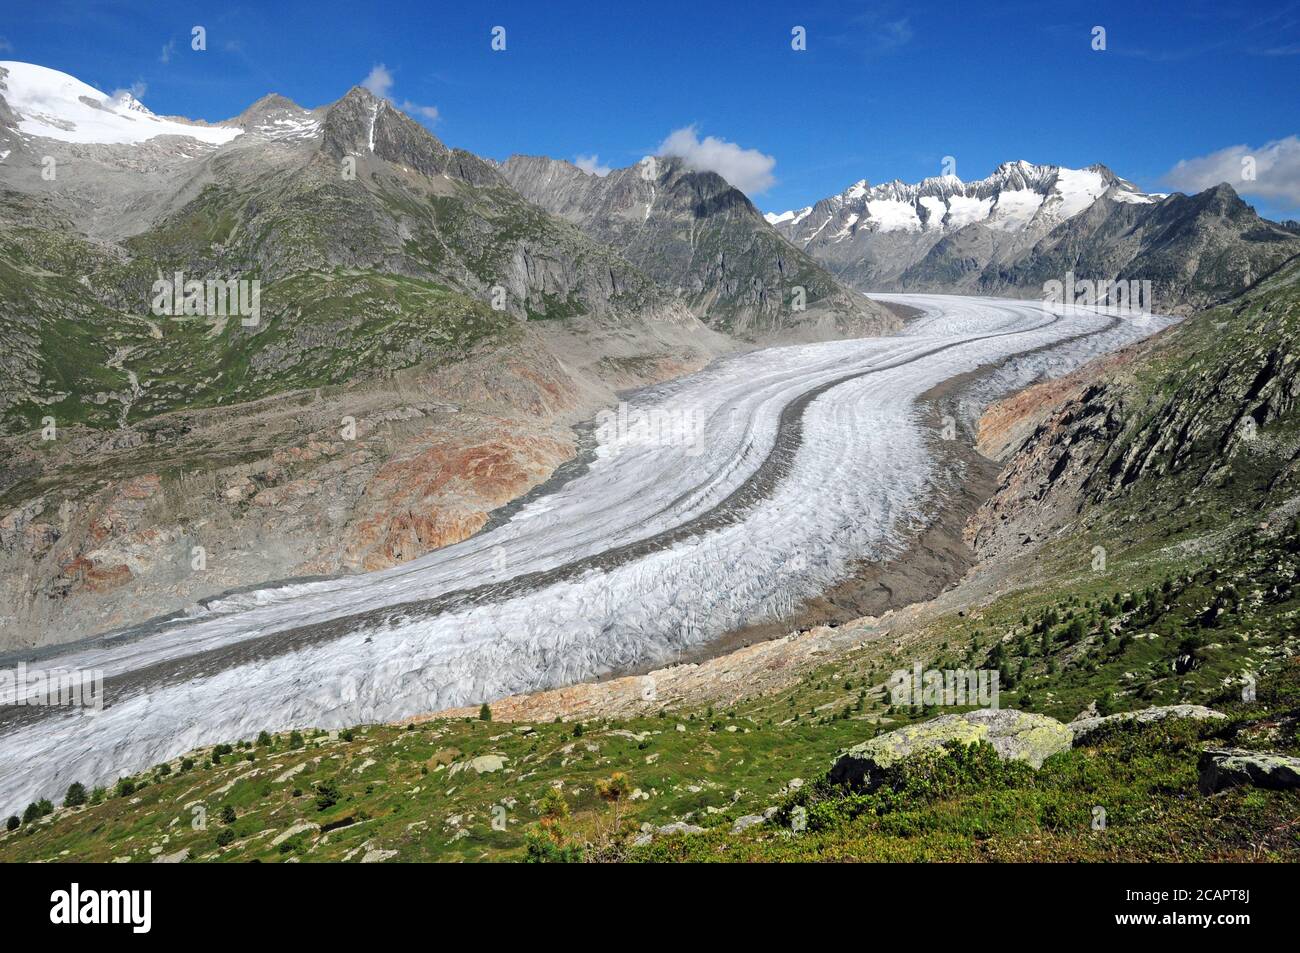 El Gran glaciar Aletsch sobre Bettmeralp es el glaciar alpino más grande de Europa. Foto de stock